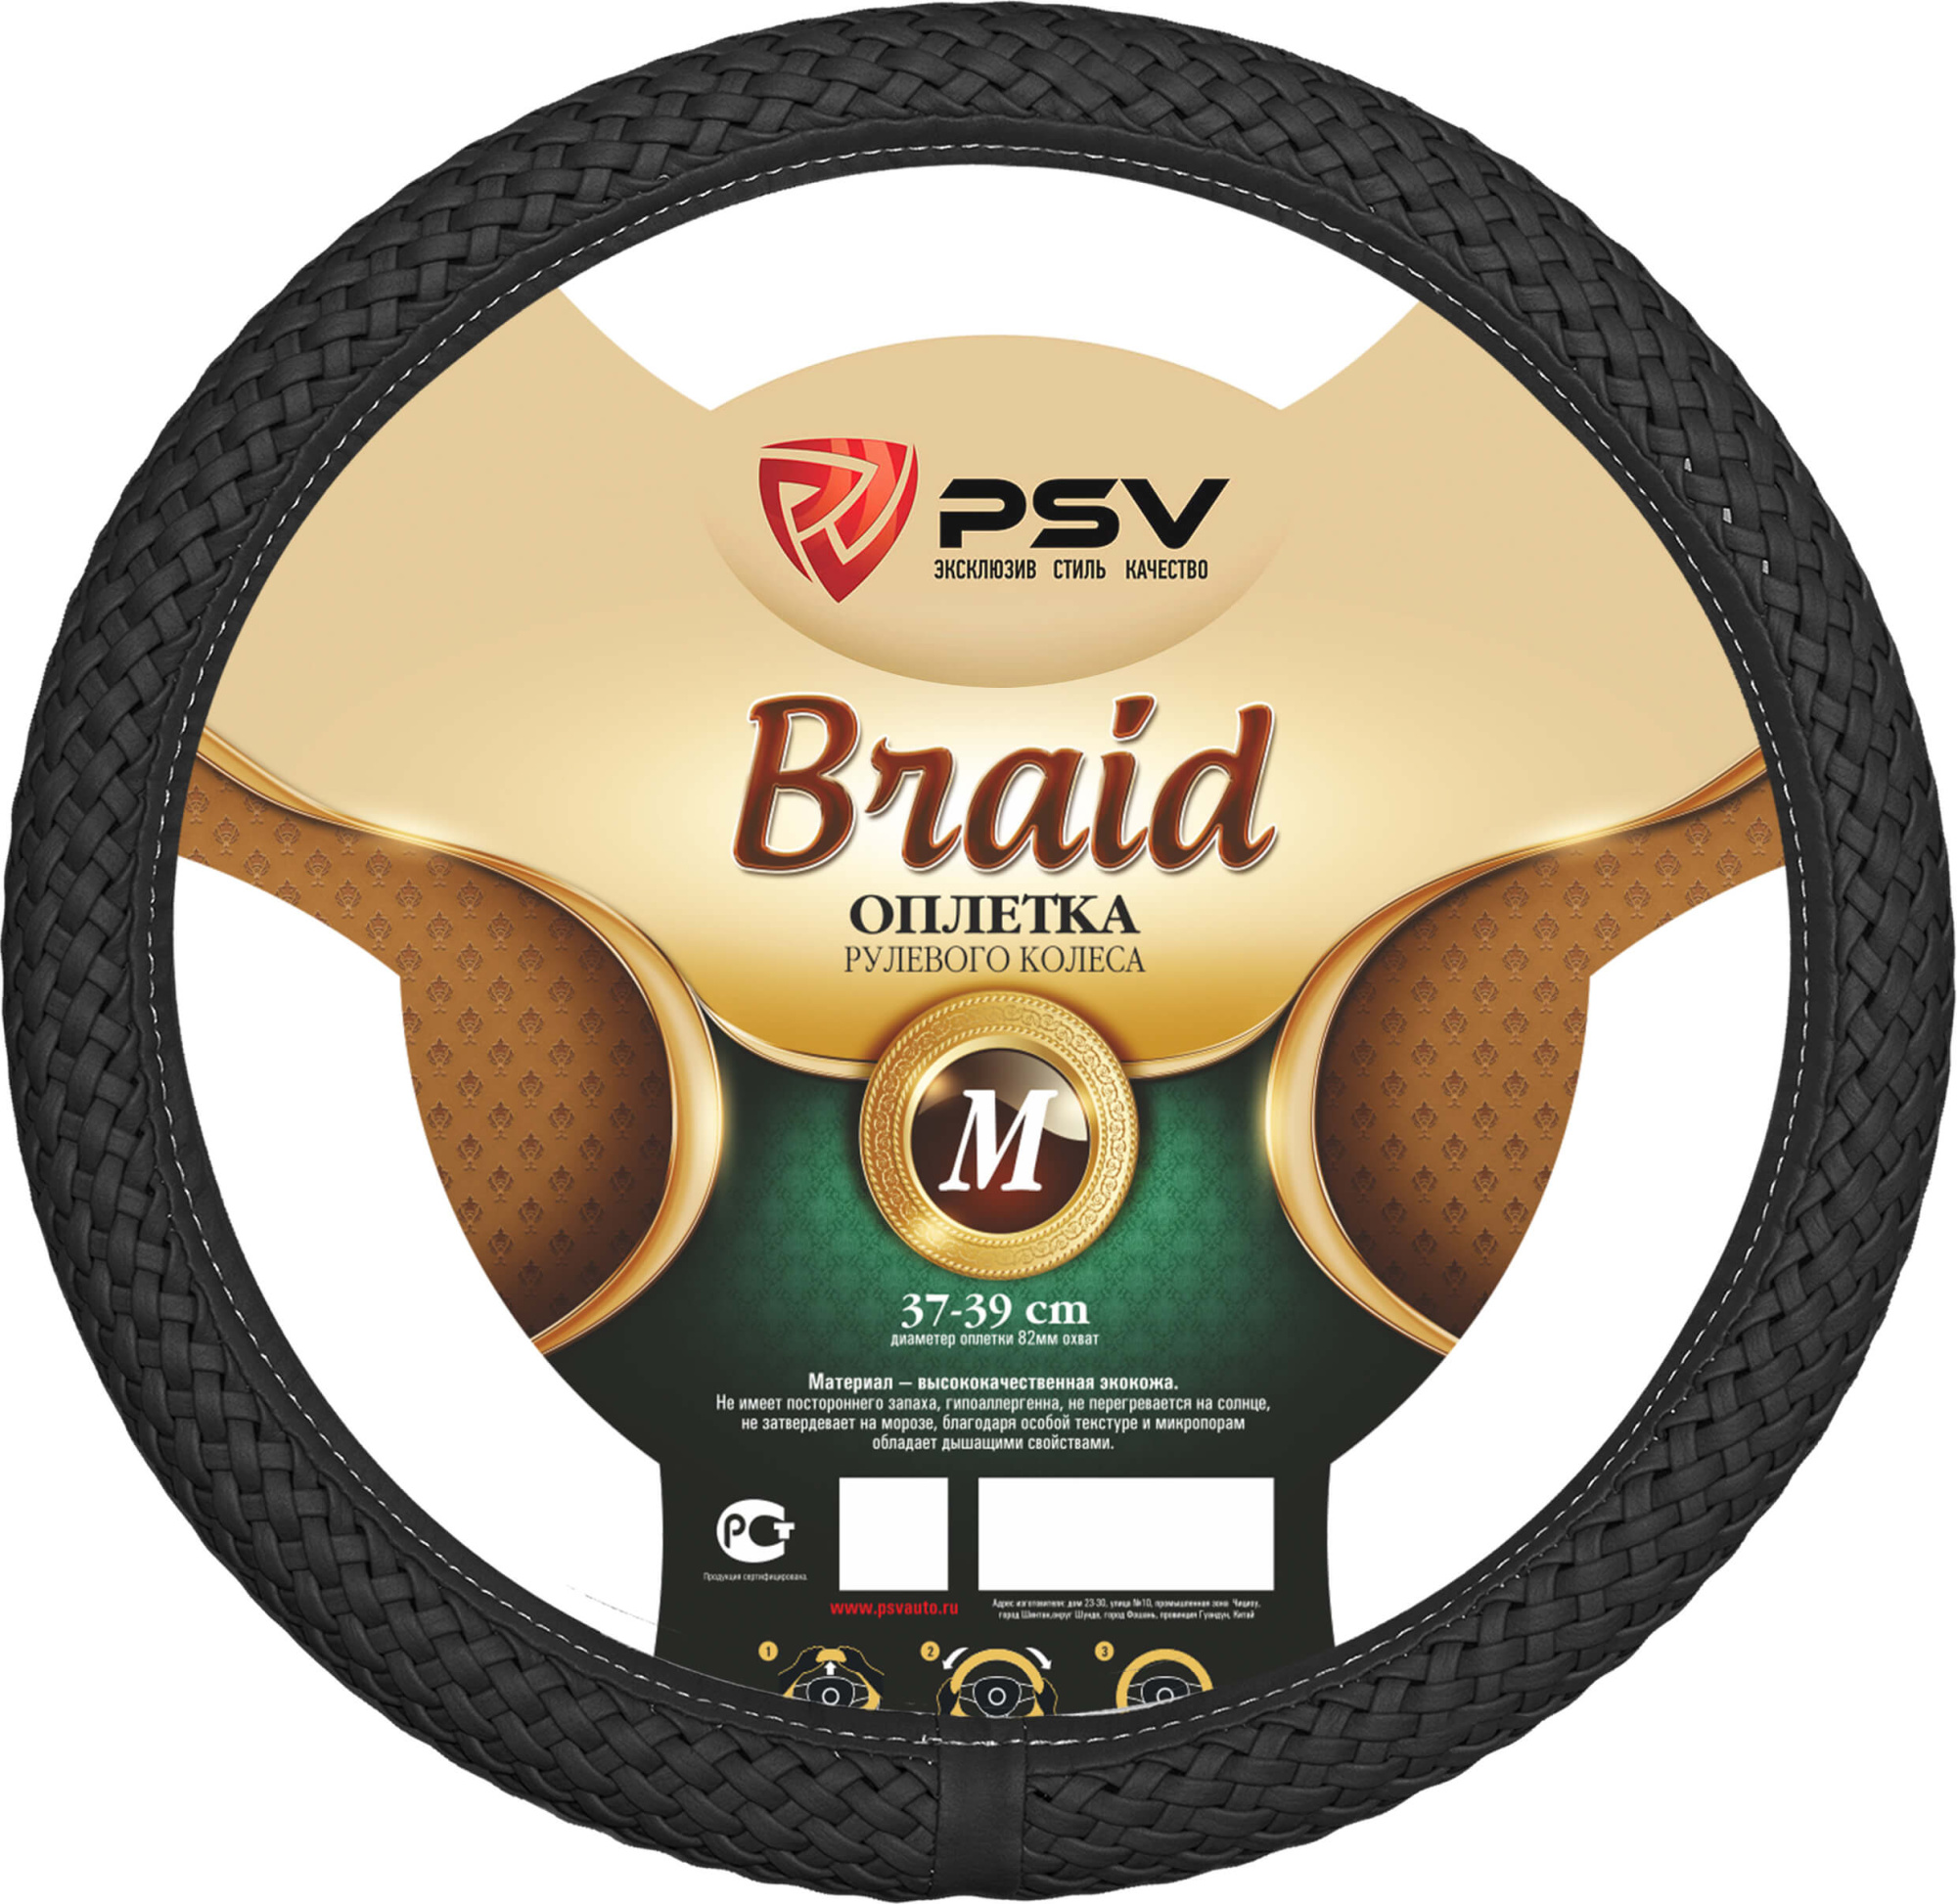 Оплетка PSV "Braid Fiber", черная